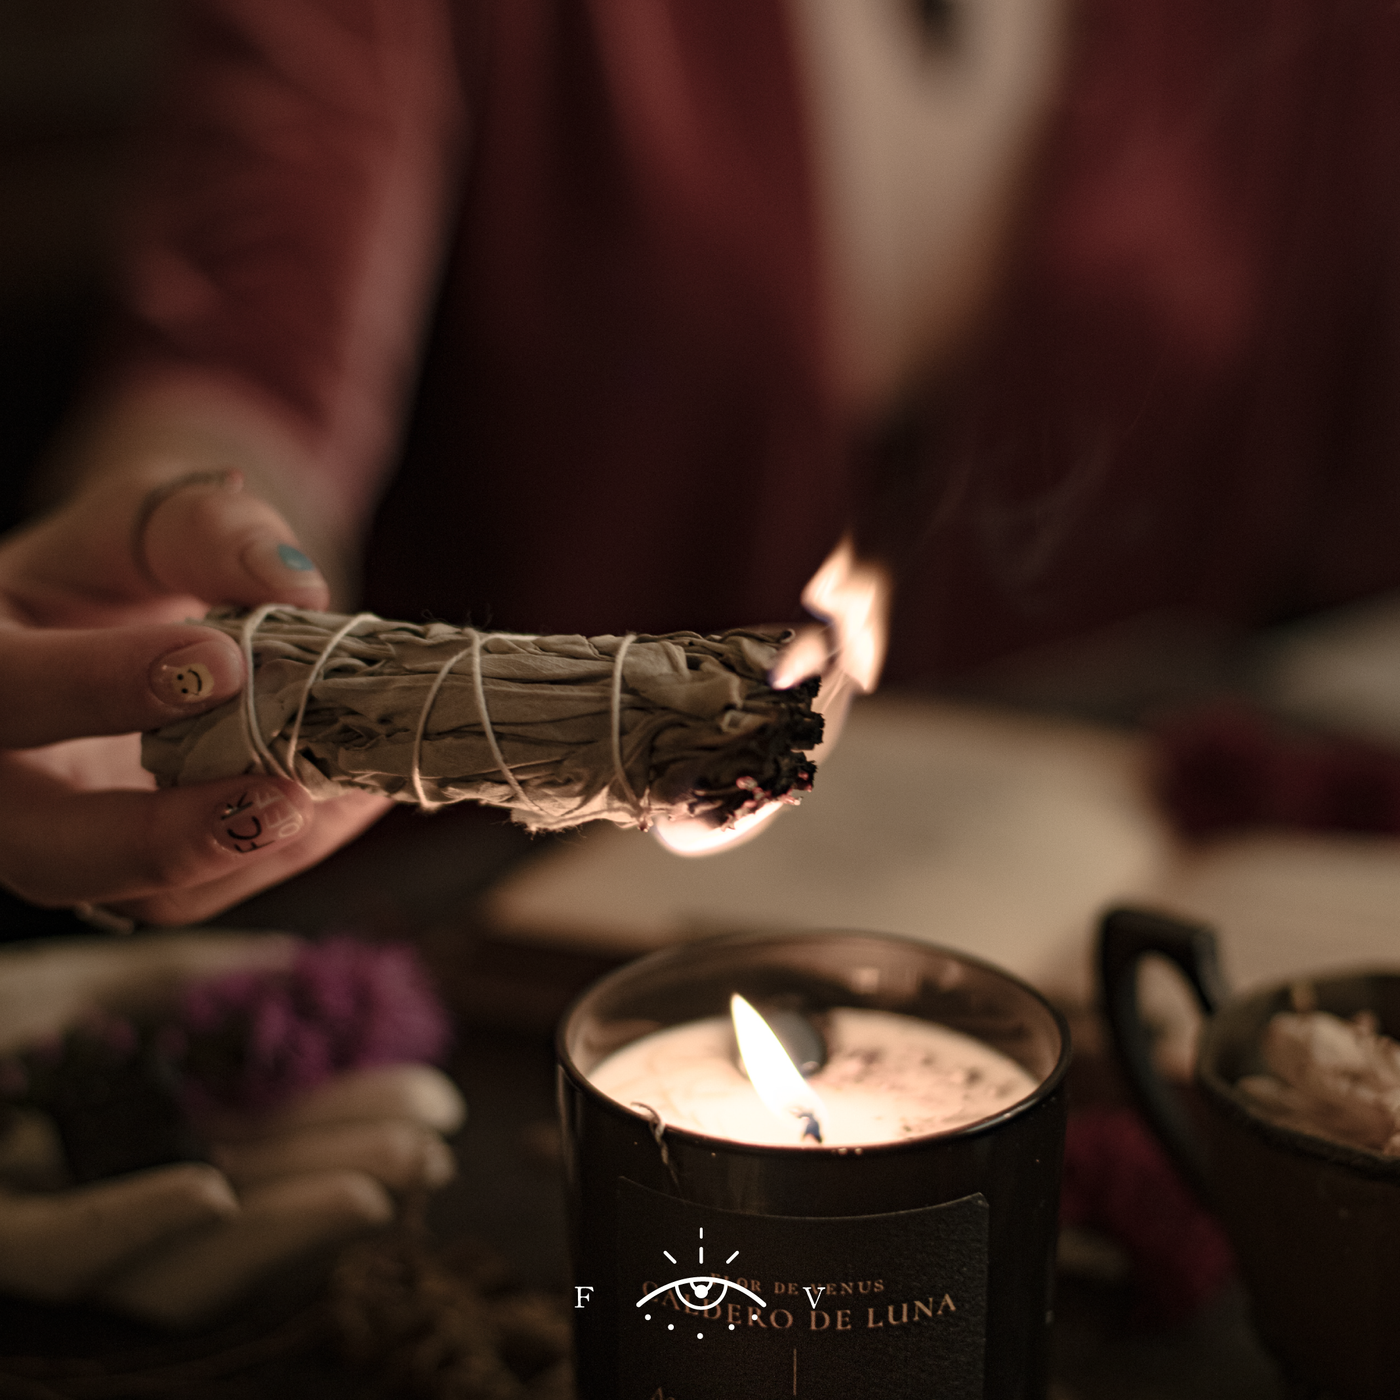 Ritual: Empieza a meditar hoy con tu vela